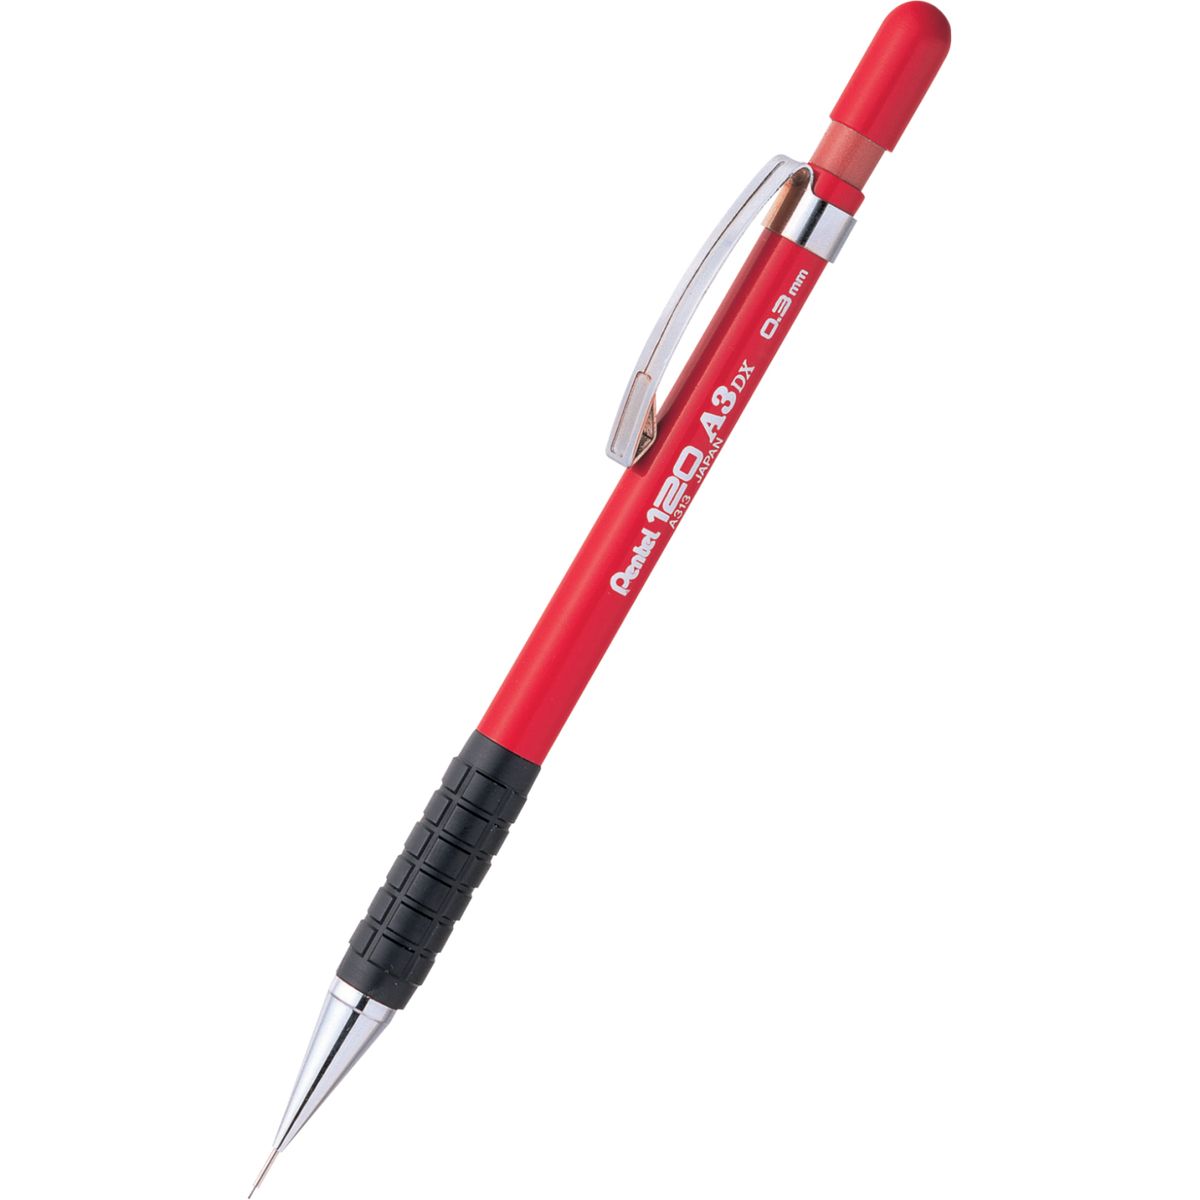 Ołówek automatyczny Pentel 0,3mm